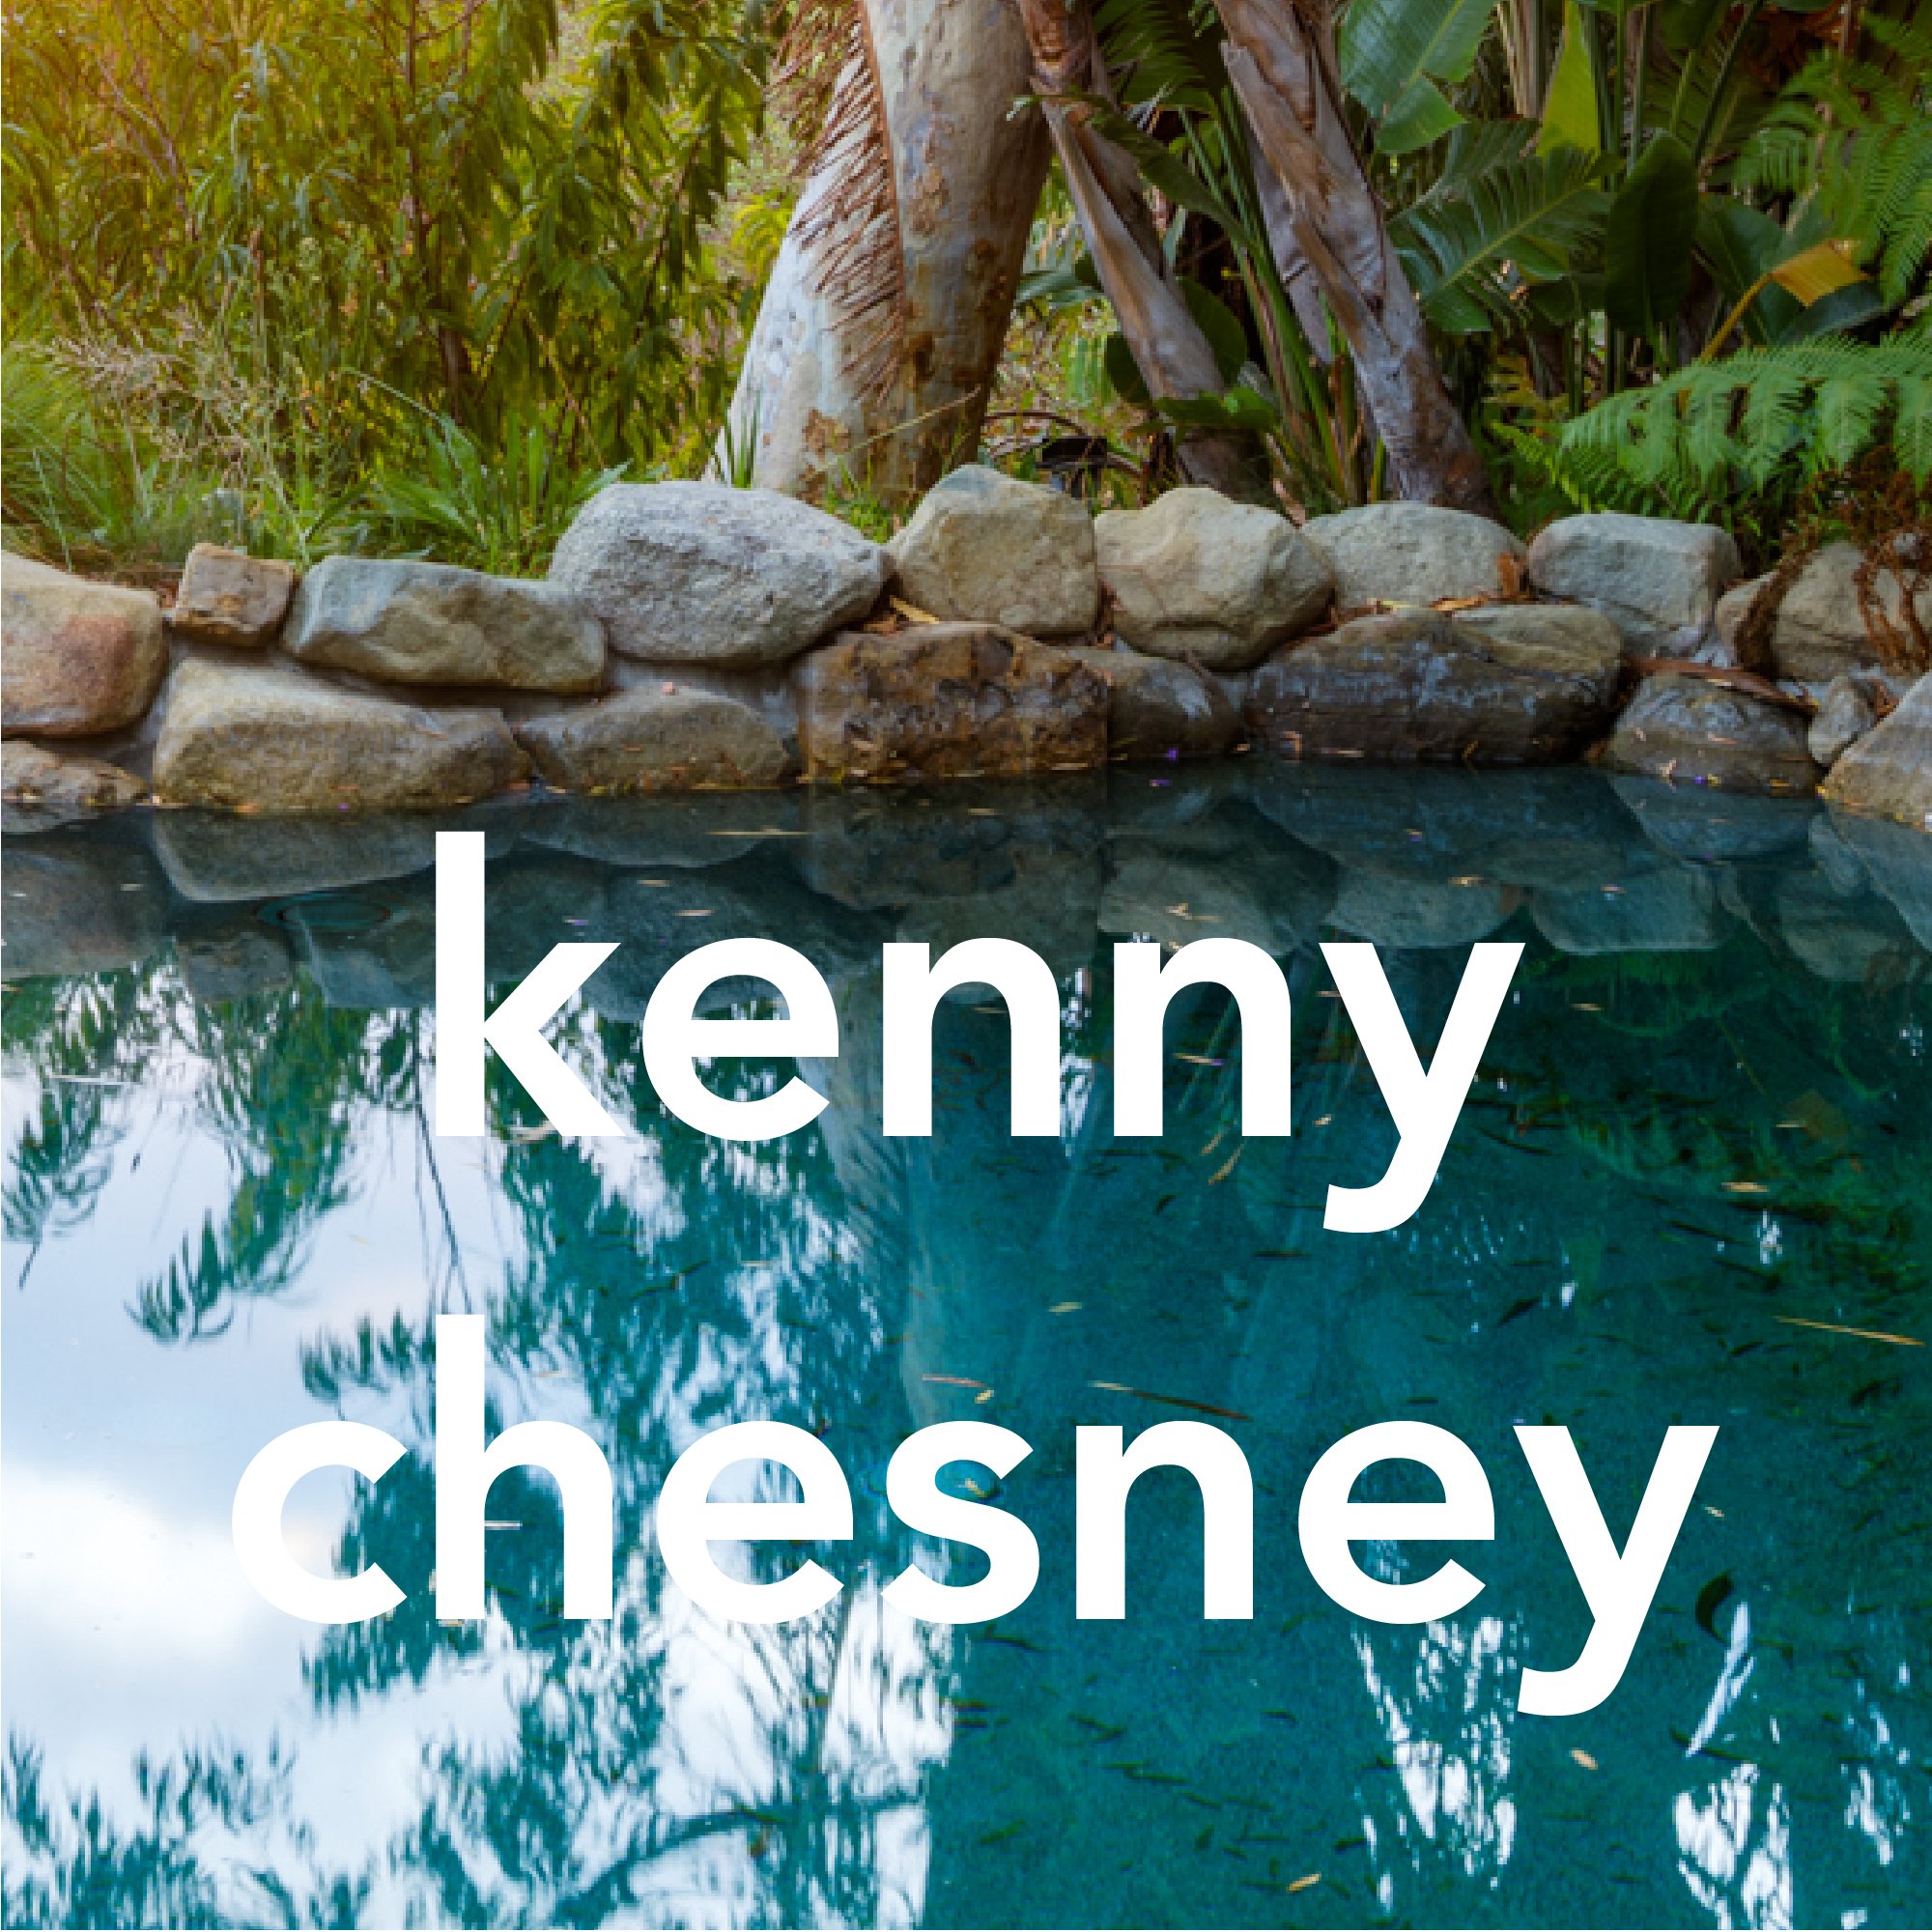 2g_kenny-chesney.jpg